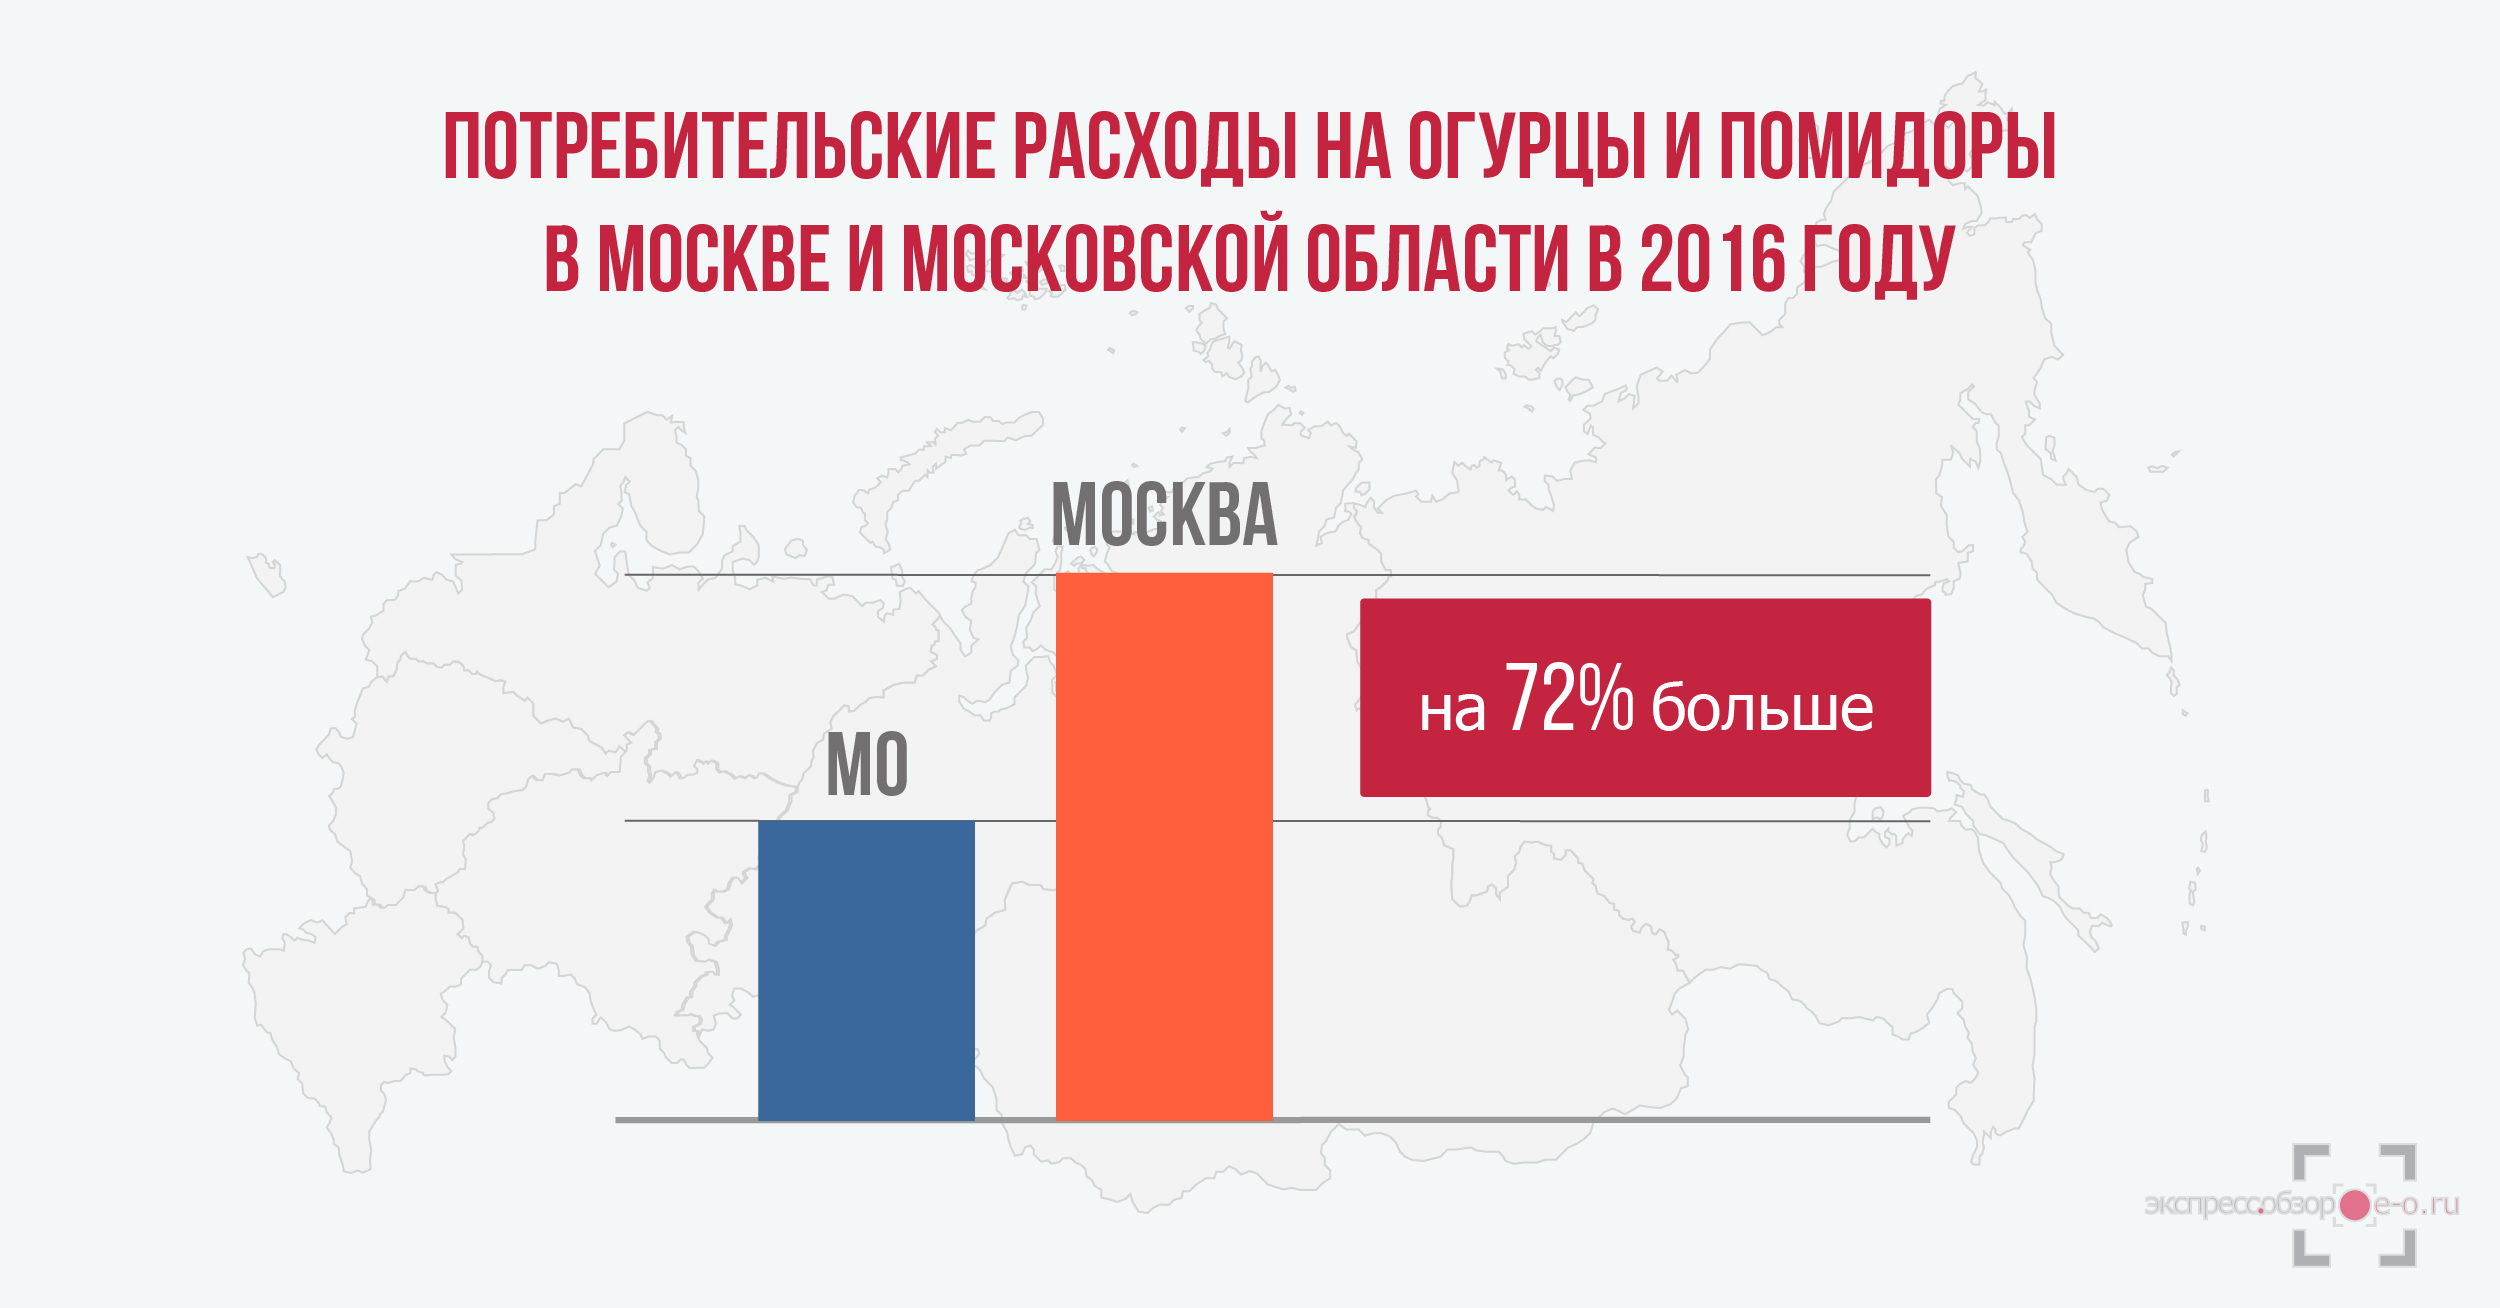 потребительские расходы на огурцы и помидоры в России в 2016 году